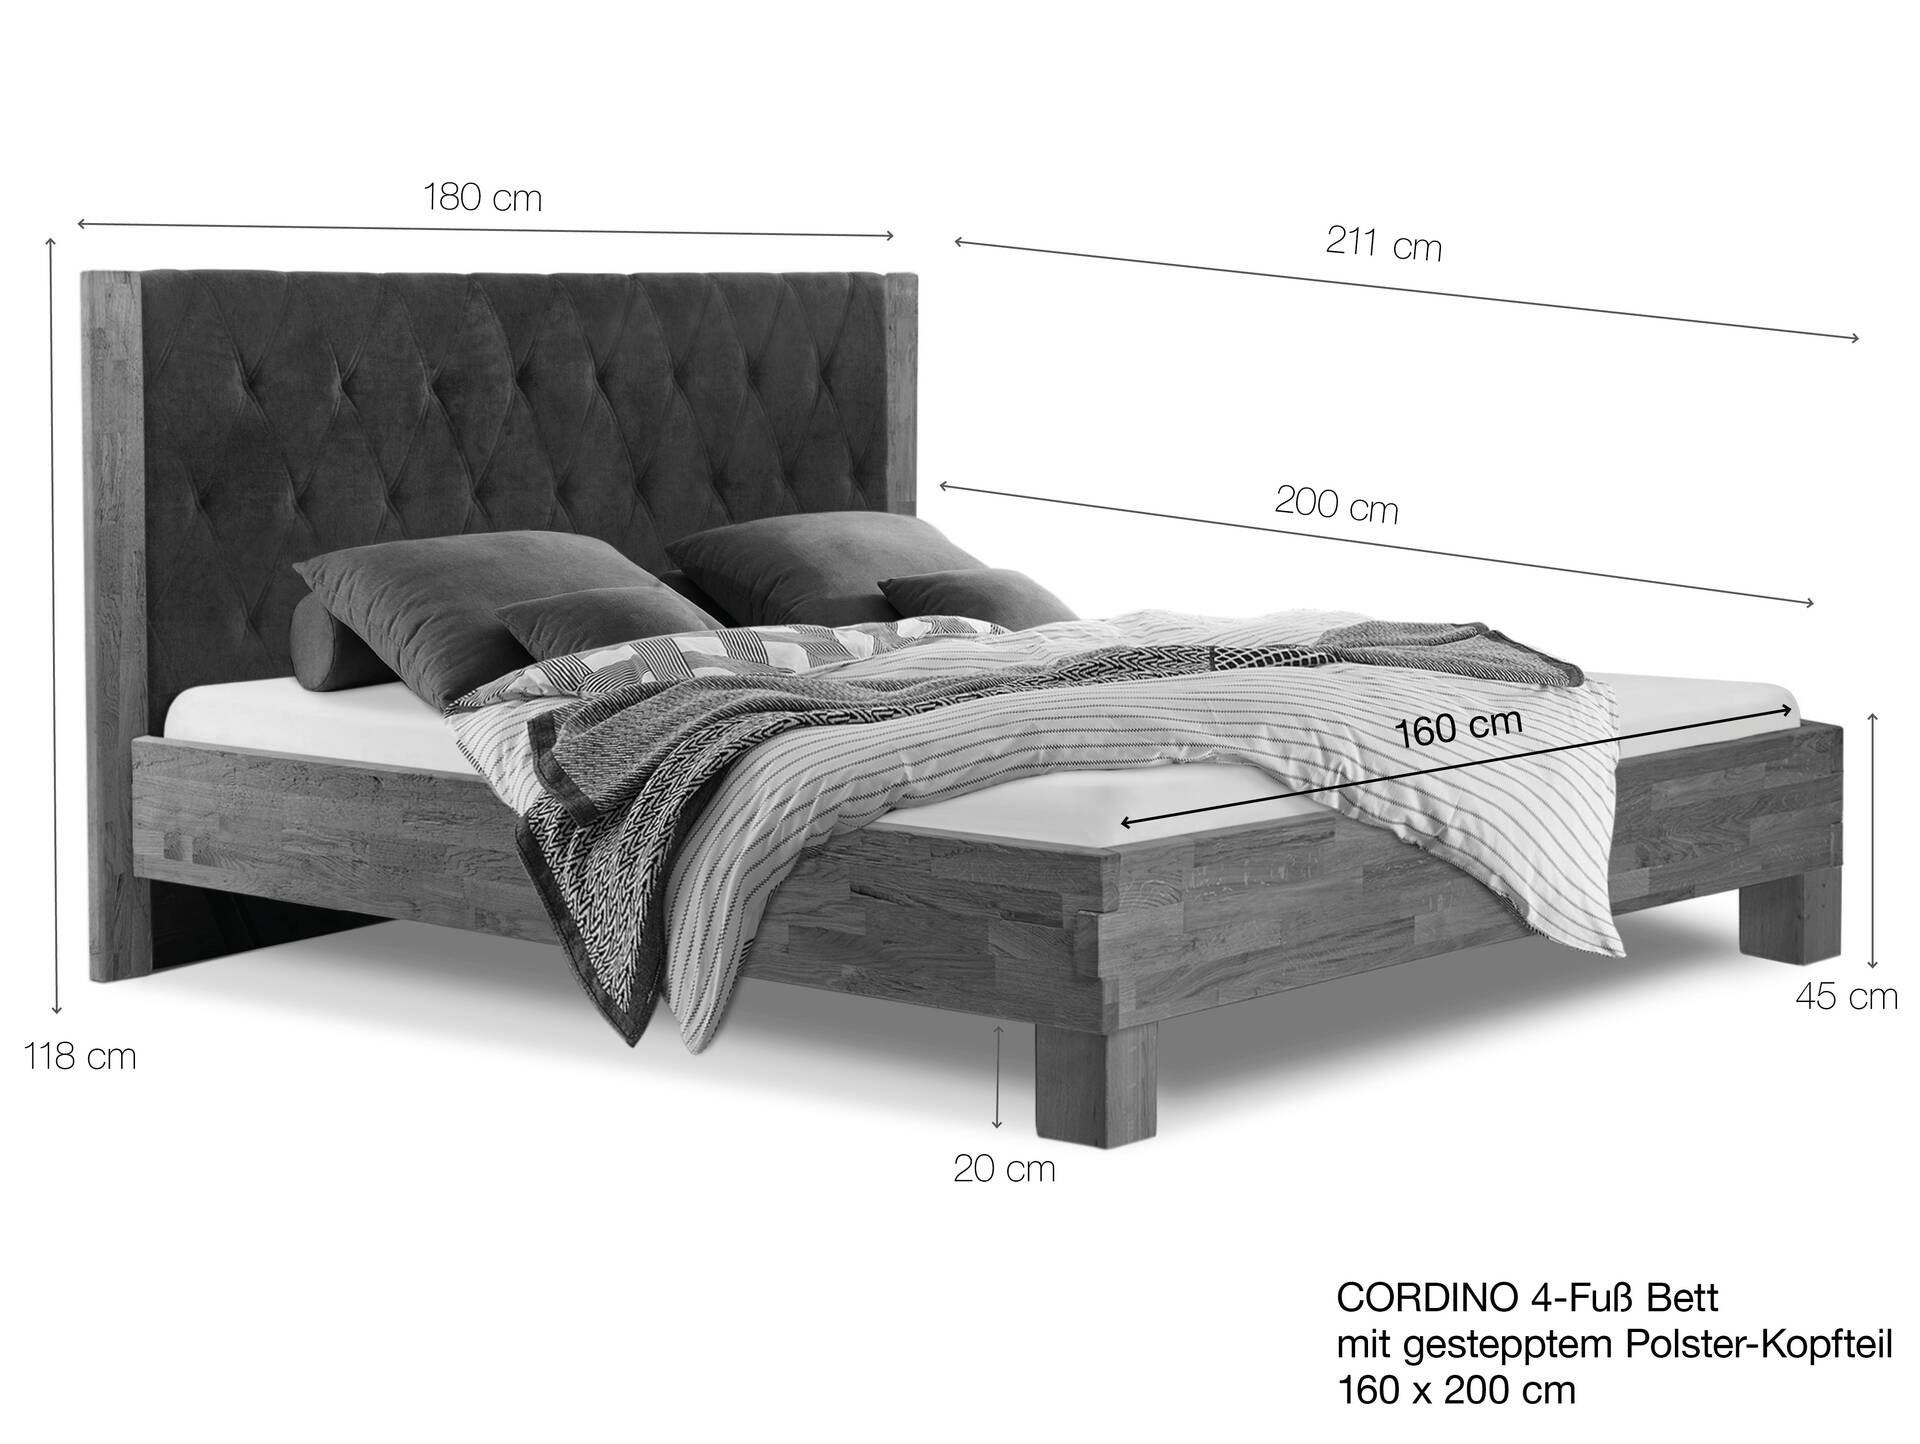 CORDINO 4-Fuß-Bett aus Eiche mit gestepptem Polster-Kopfteil, Material Massivholz 160 x 200 cm | Eiche unbehandelt | Stoff Anthrazit | gebürstet